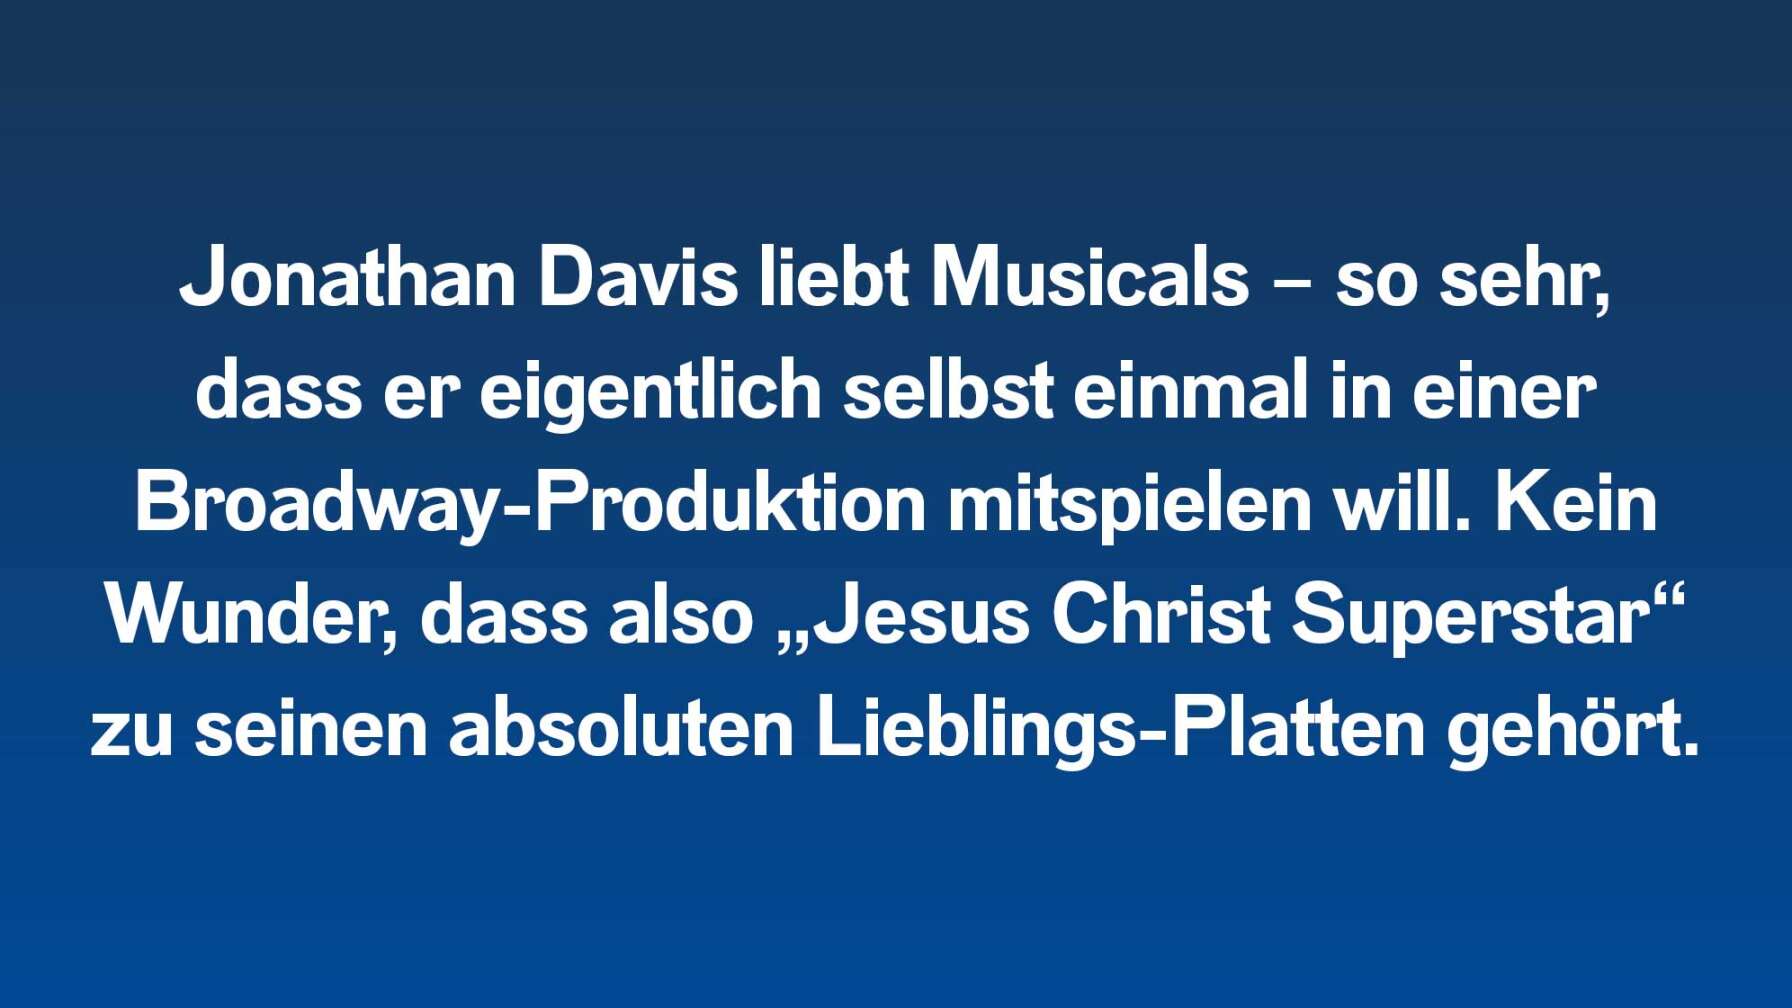 Jonathan Davis liebt Musicals – so sehr, dass er eigentlich selbst einmal in einer Broadway-Produktion mitspielen will. Kein Wunder, dass also „Jesus Christ Superstar“ zu seinen absoluten Lieblings-Platten gehört.